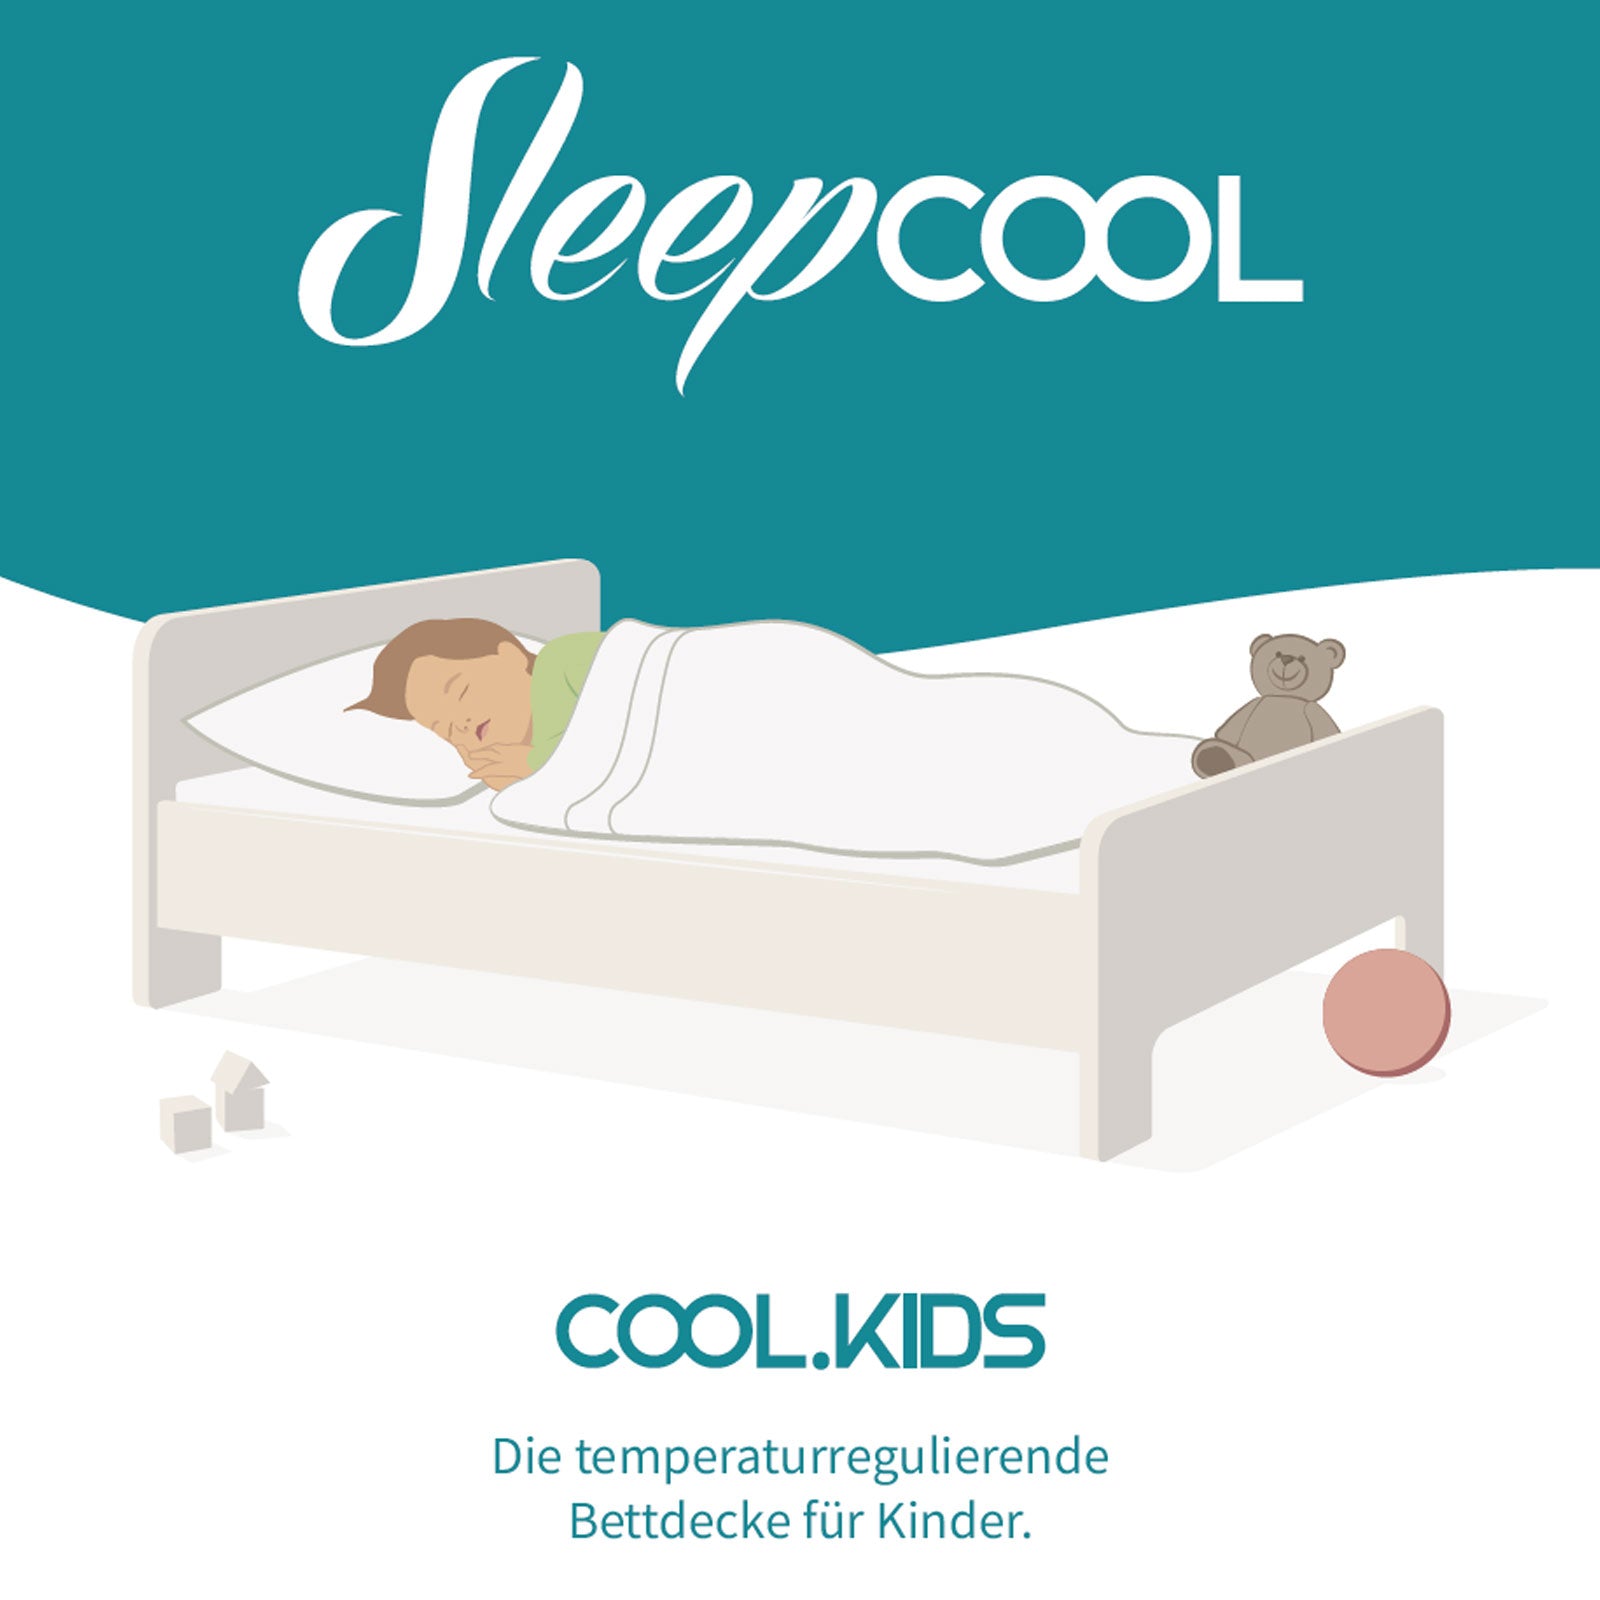 Cool.KIDS - Temperaturregulierende Bettdecke 100x135cm für Kinder